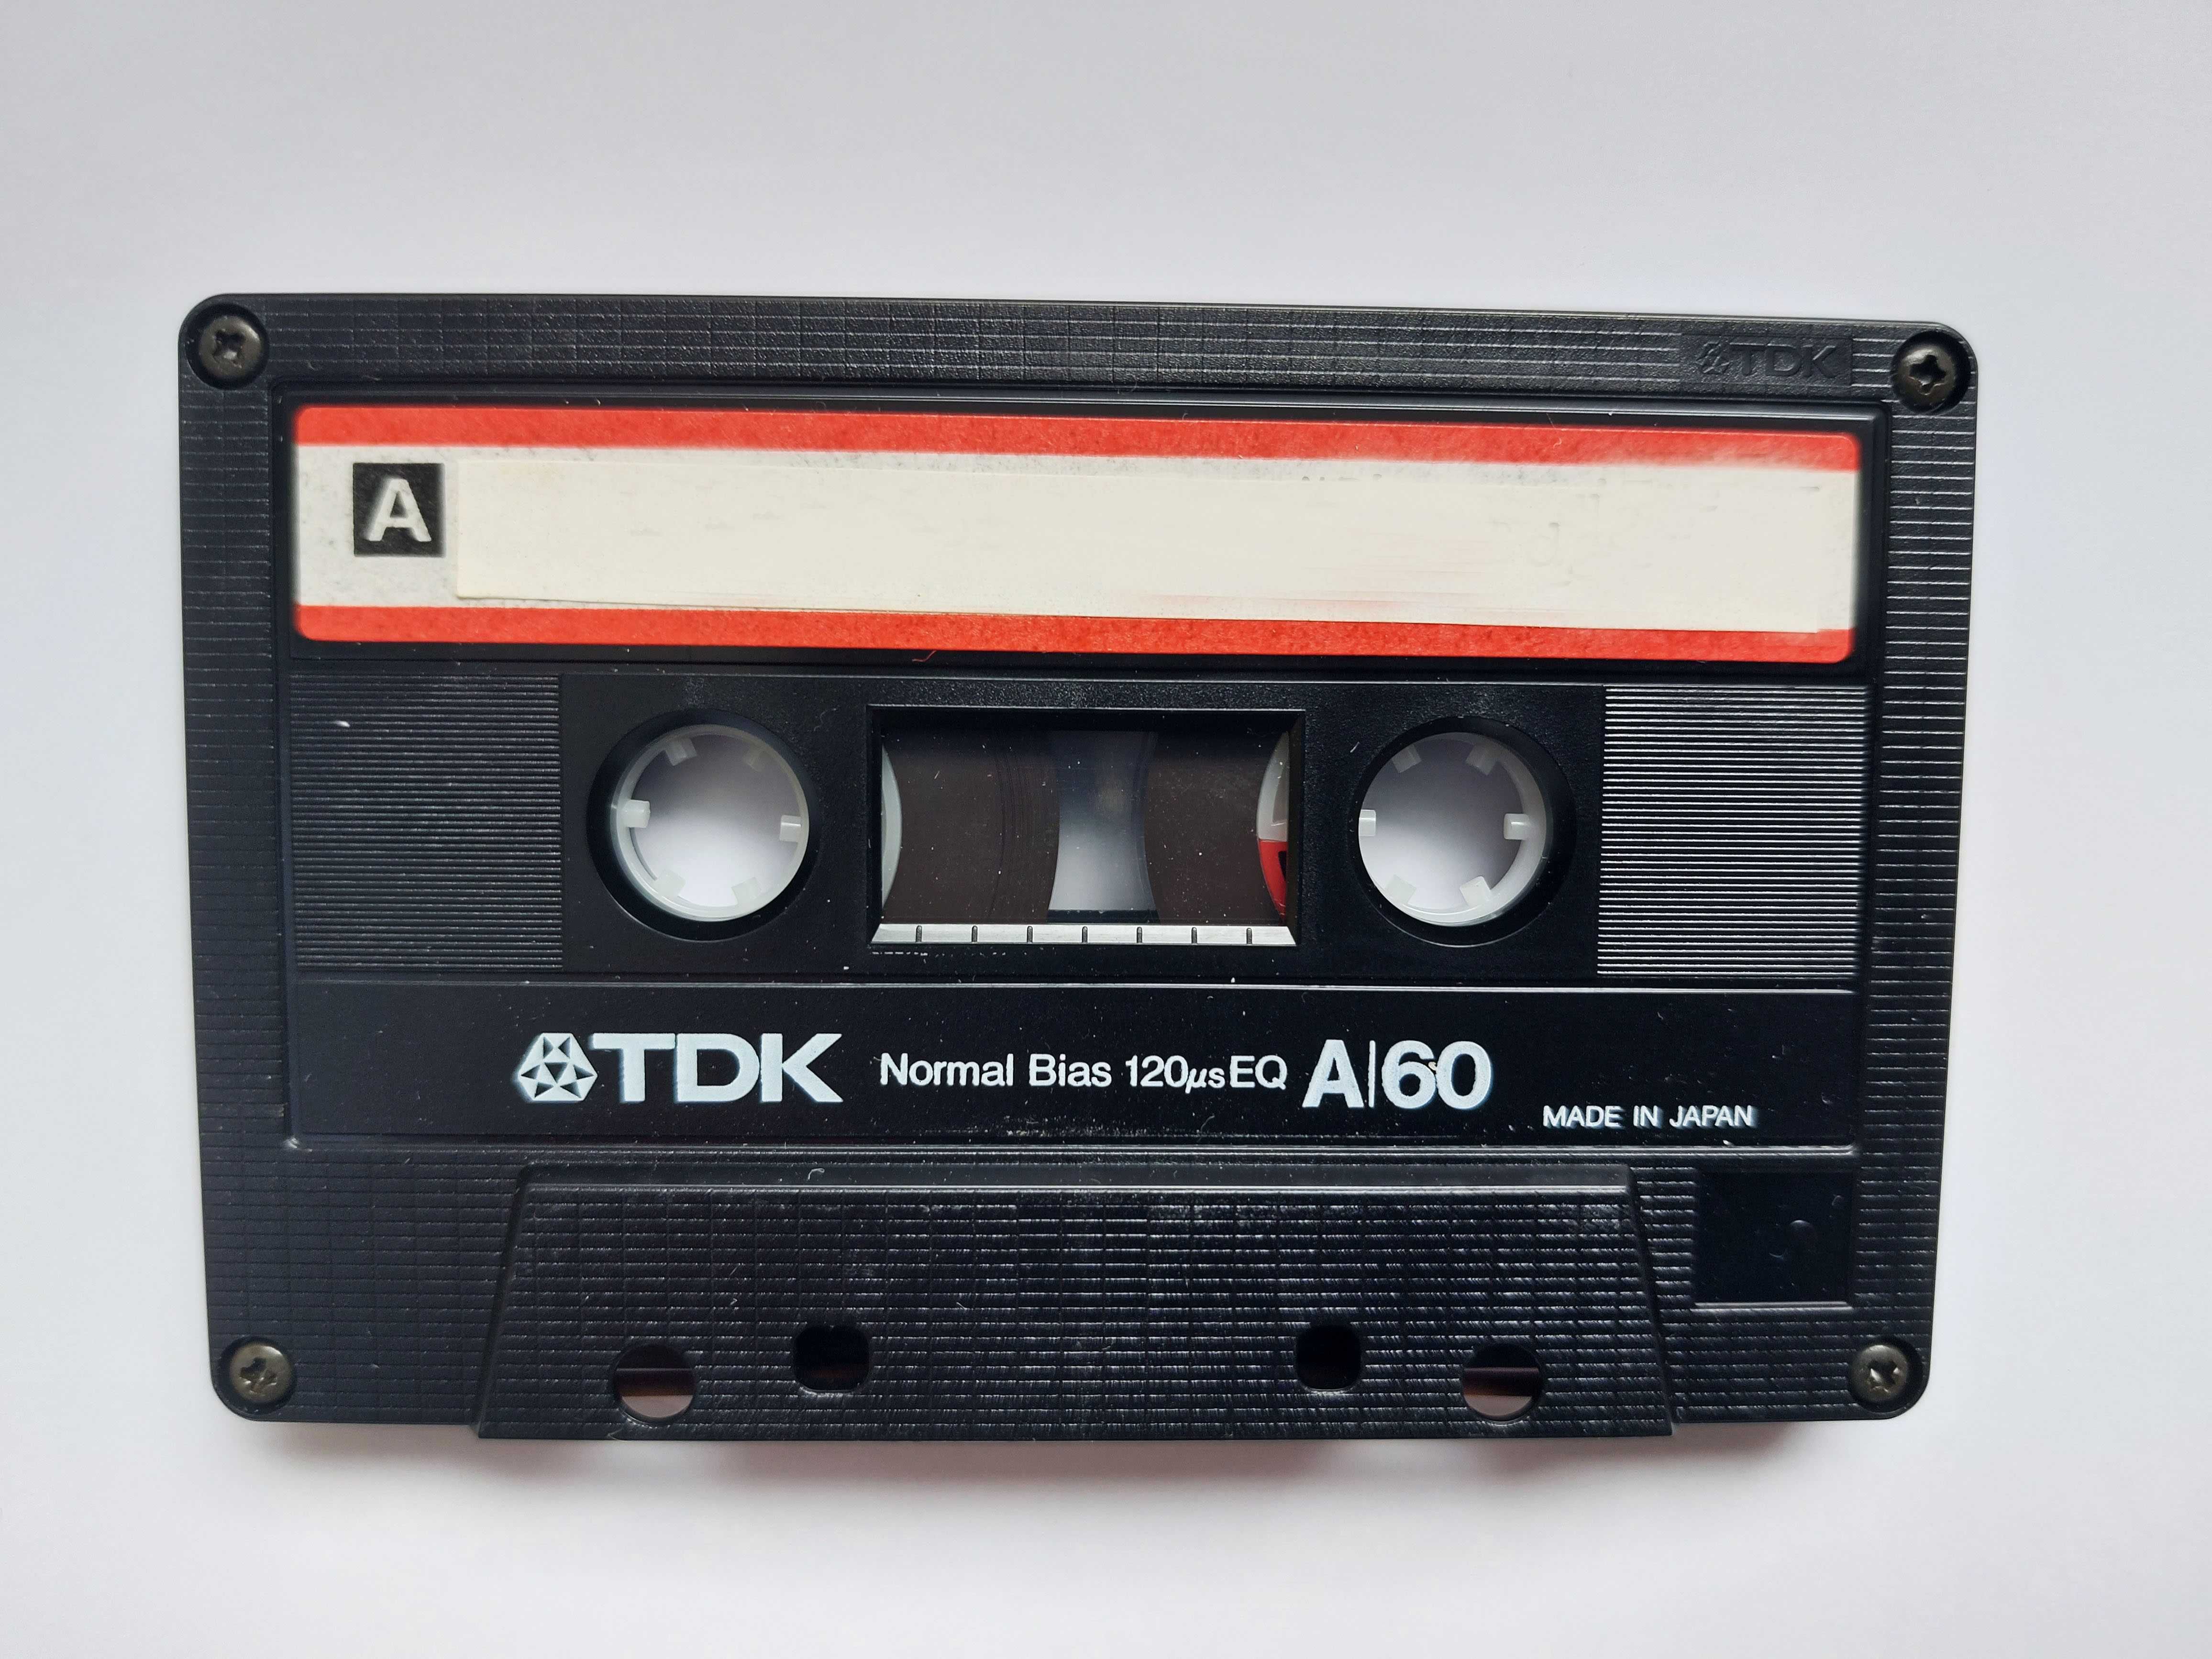 kasety audio używane do ponownego nagrania - zestaw 5 sztuk